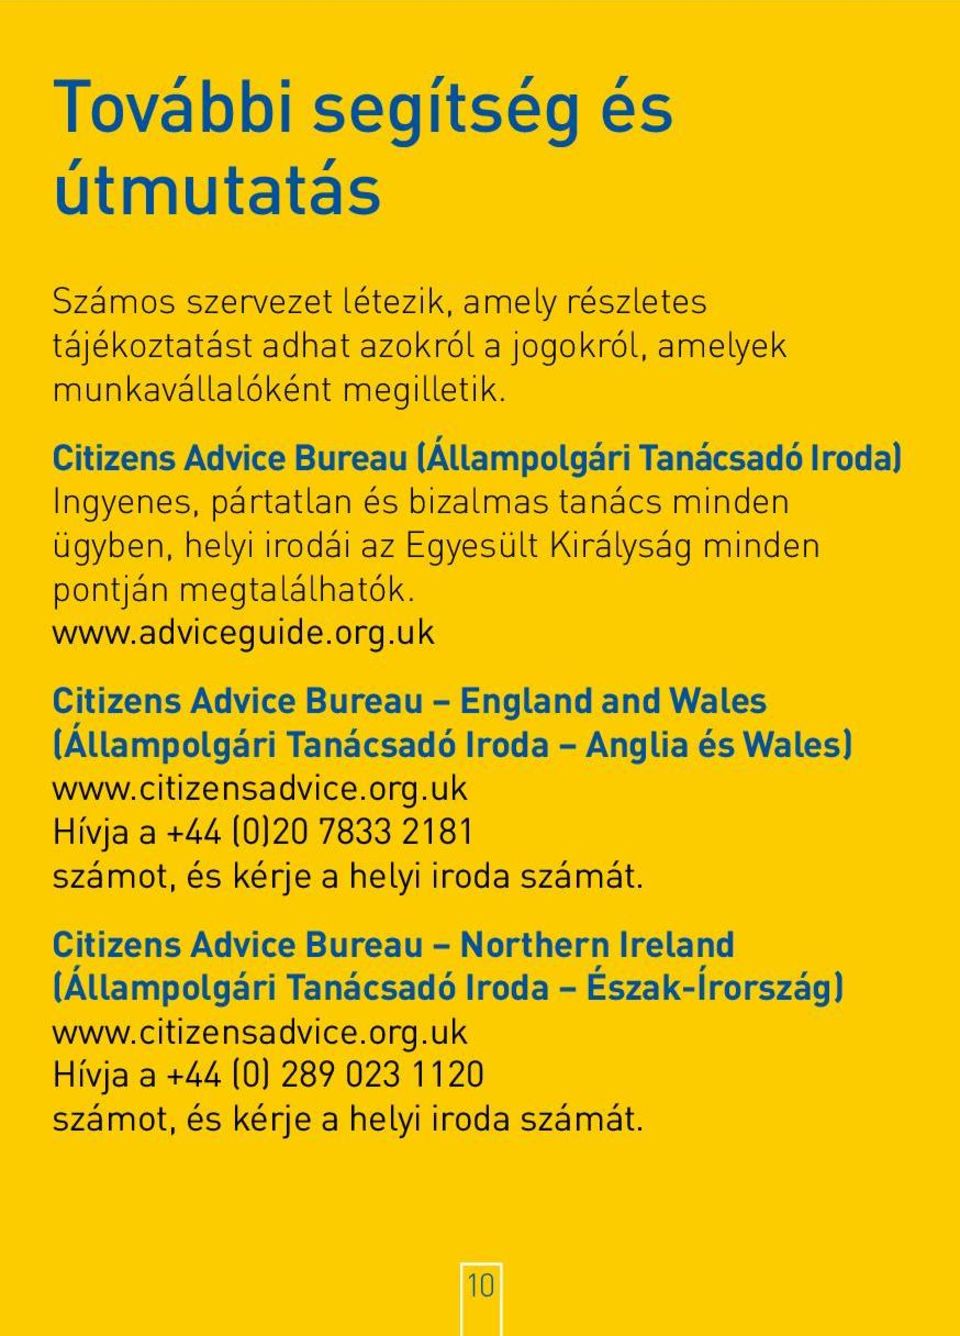 adviceguide.org.uk Citizens Advice Bureau England and Wales (Állampolgári Tanácsadó Iroda Anglia és Wales) www.citizensadvice.org.uk Hívja a +44 (0)20 7833 2181 számot, és kérje a helyi iroda számát.